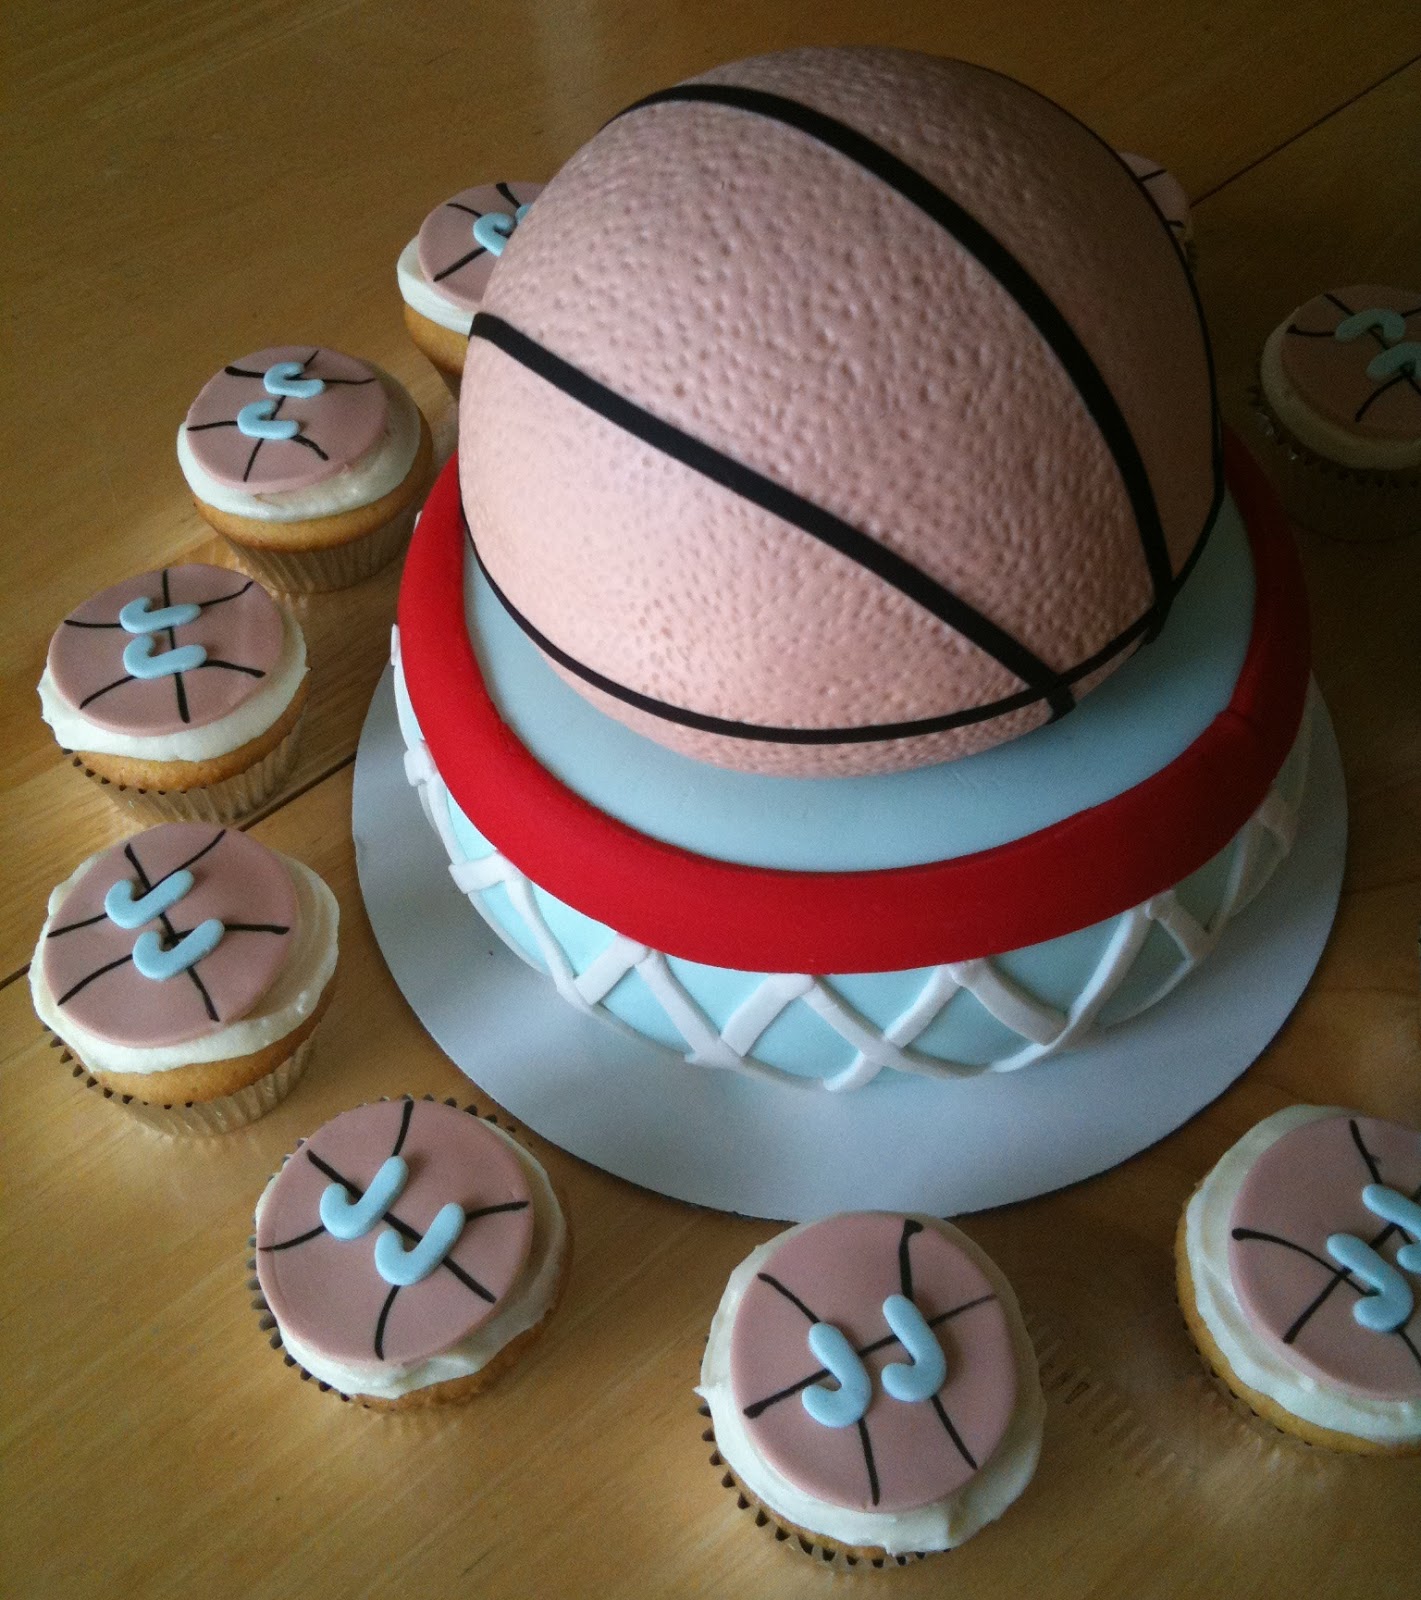 I Design Basketball Cake Tutorial 